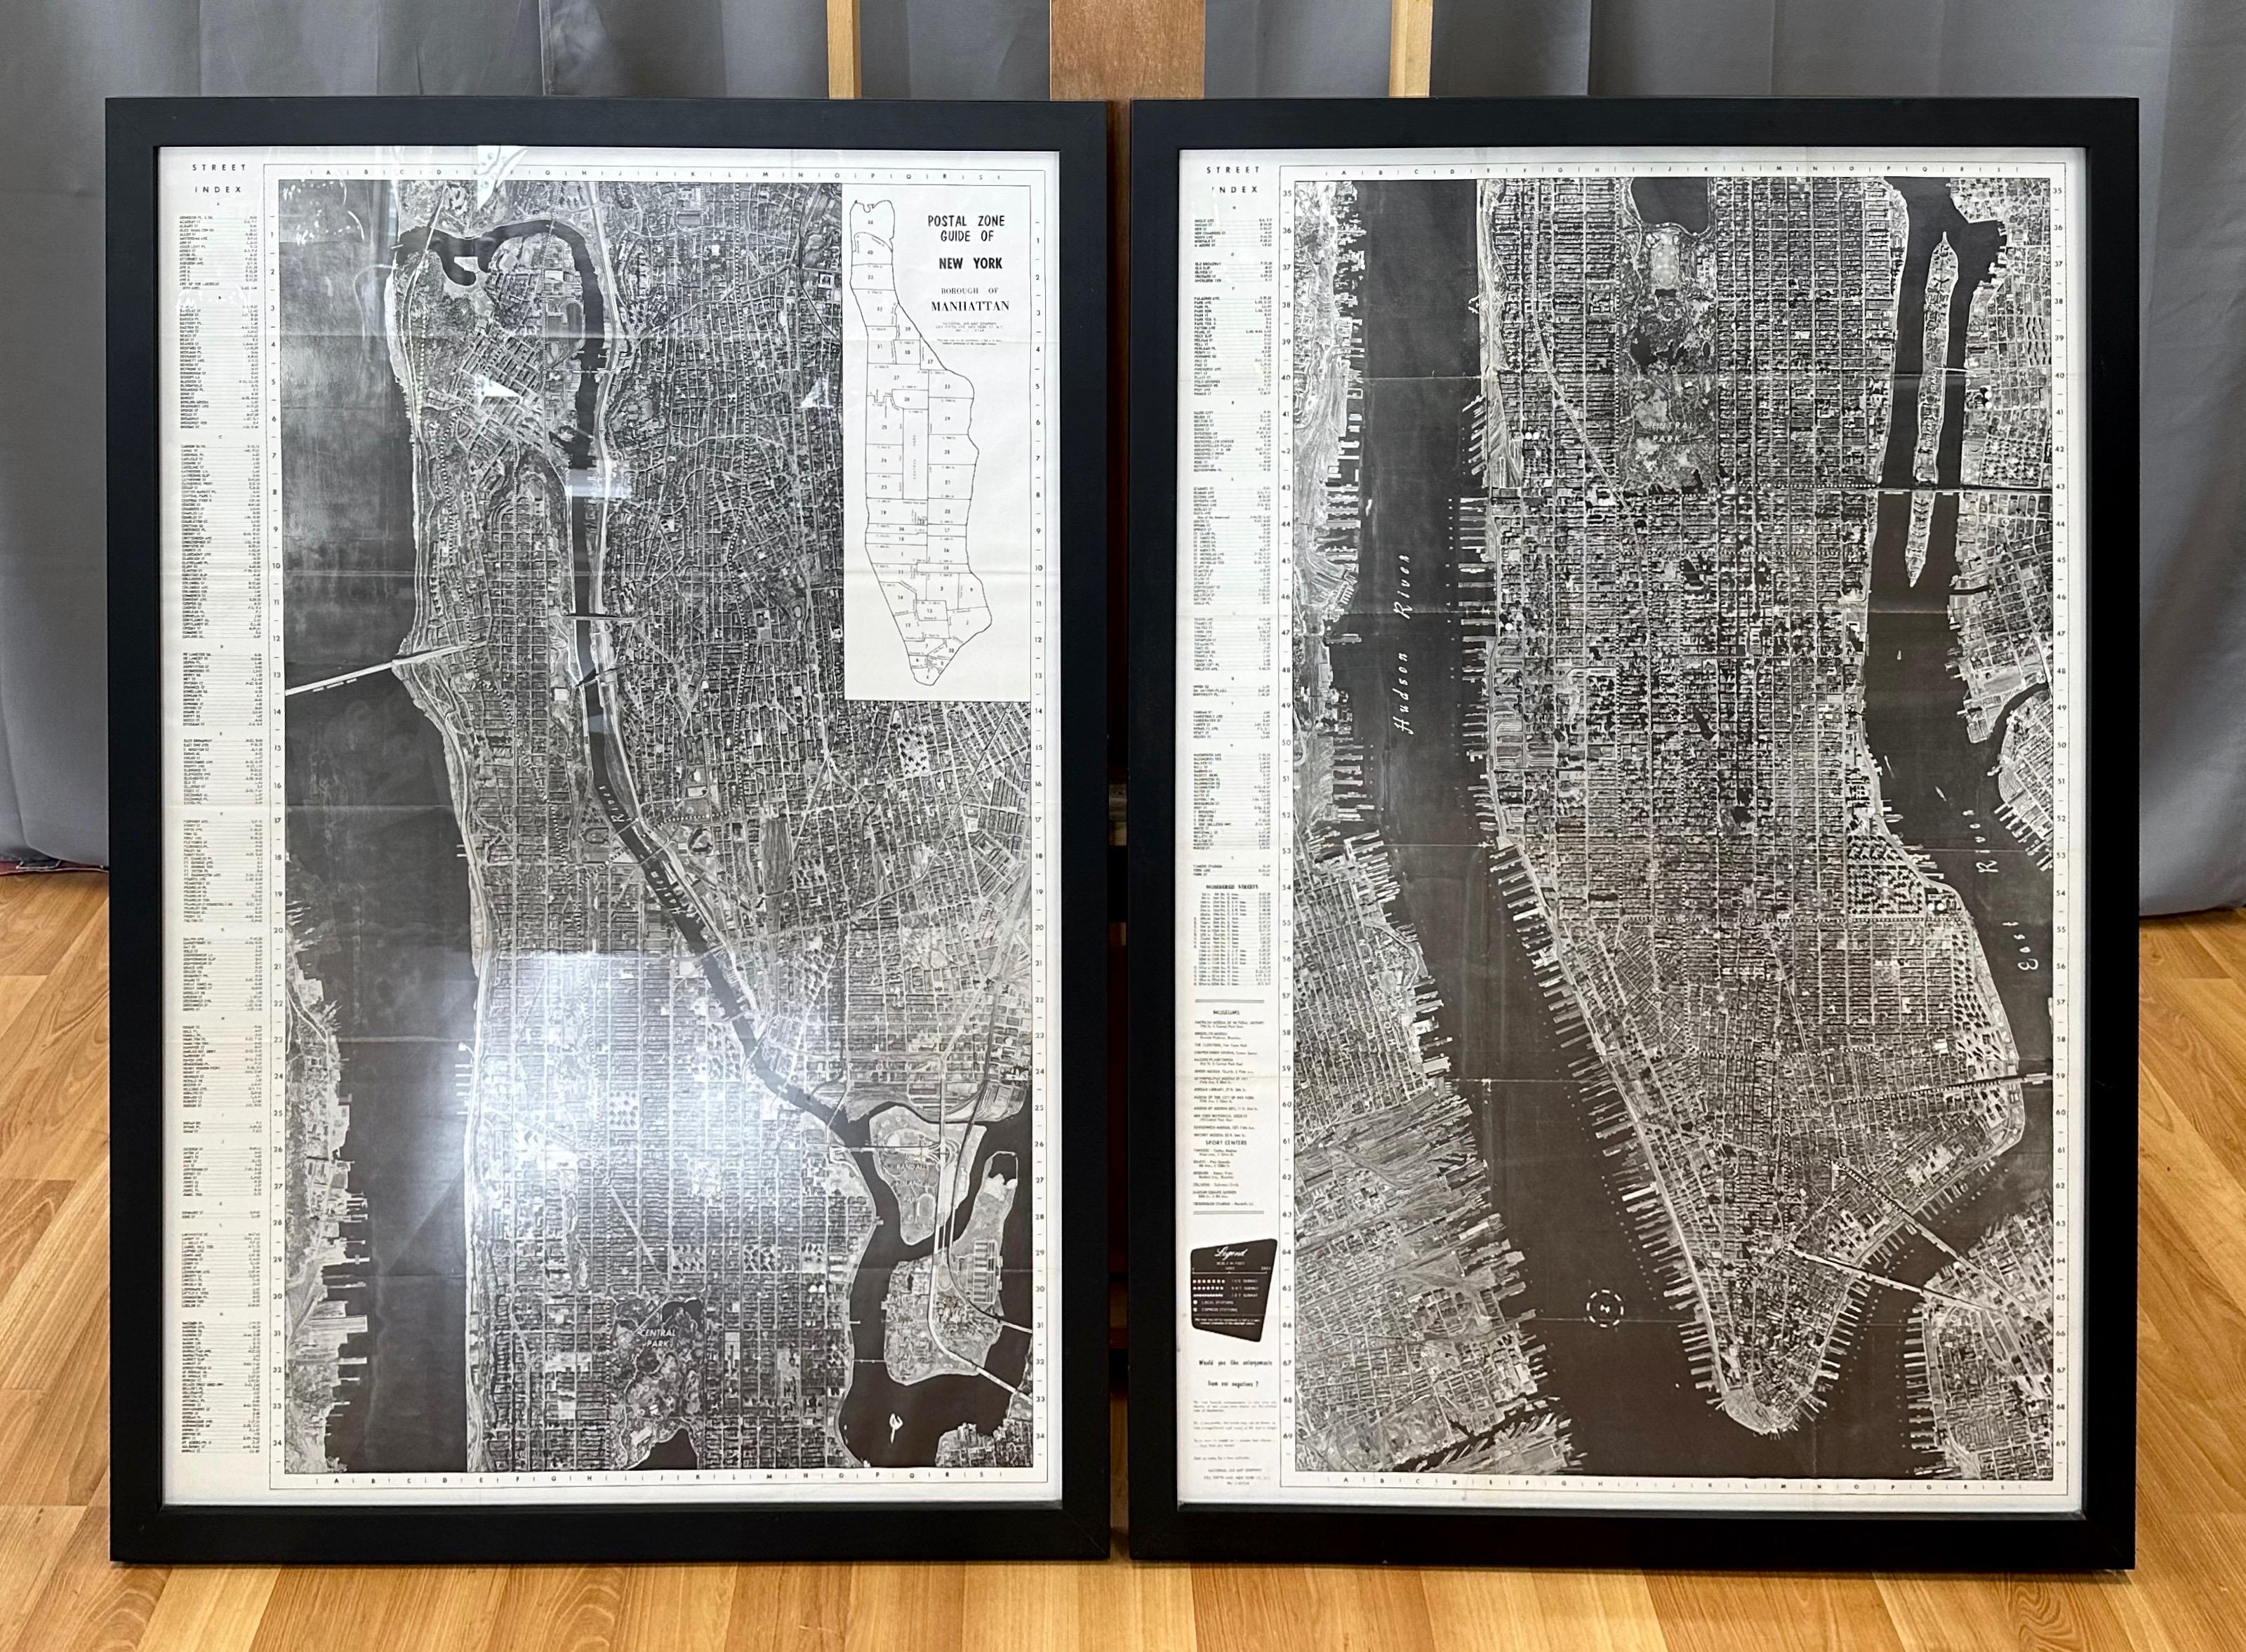 Une monumentale et rare carte photographique aérienne en deux parties, encadrée, datant de 1955, de l'arrondissement de Manhattan à New York City, réalisée par la National Air Map Company, y compris sa page de couverture d'origine.

Intitulées